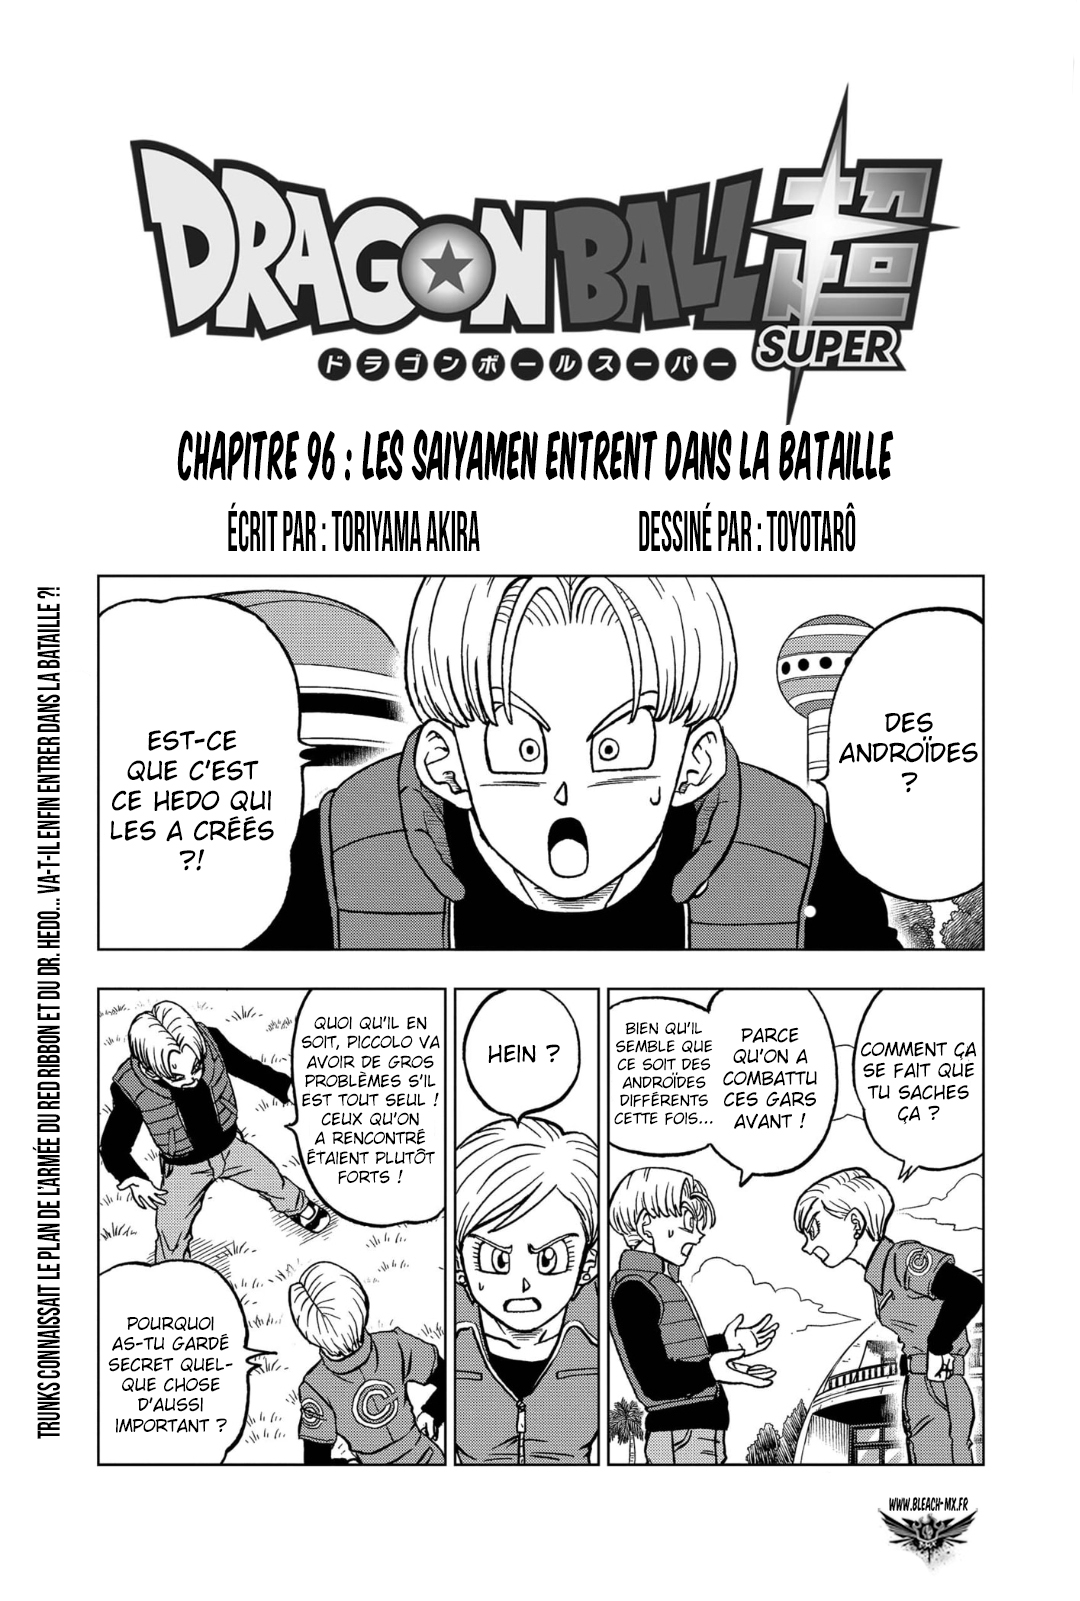  Dragon Ball Super 096 Page 1